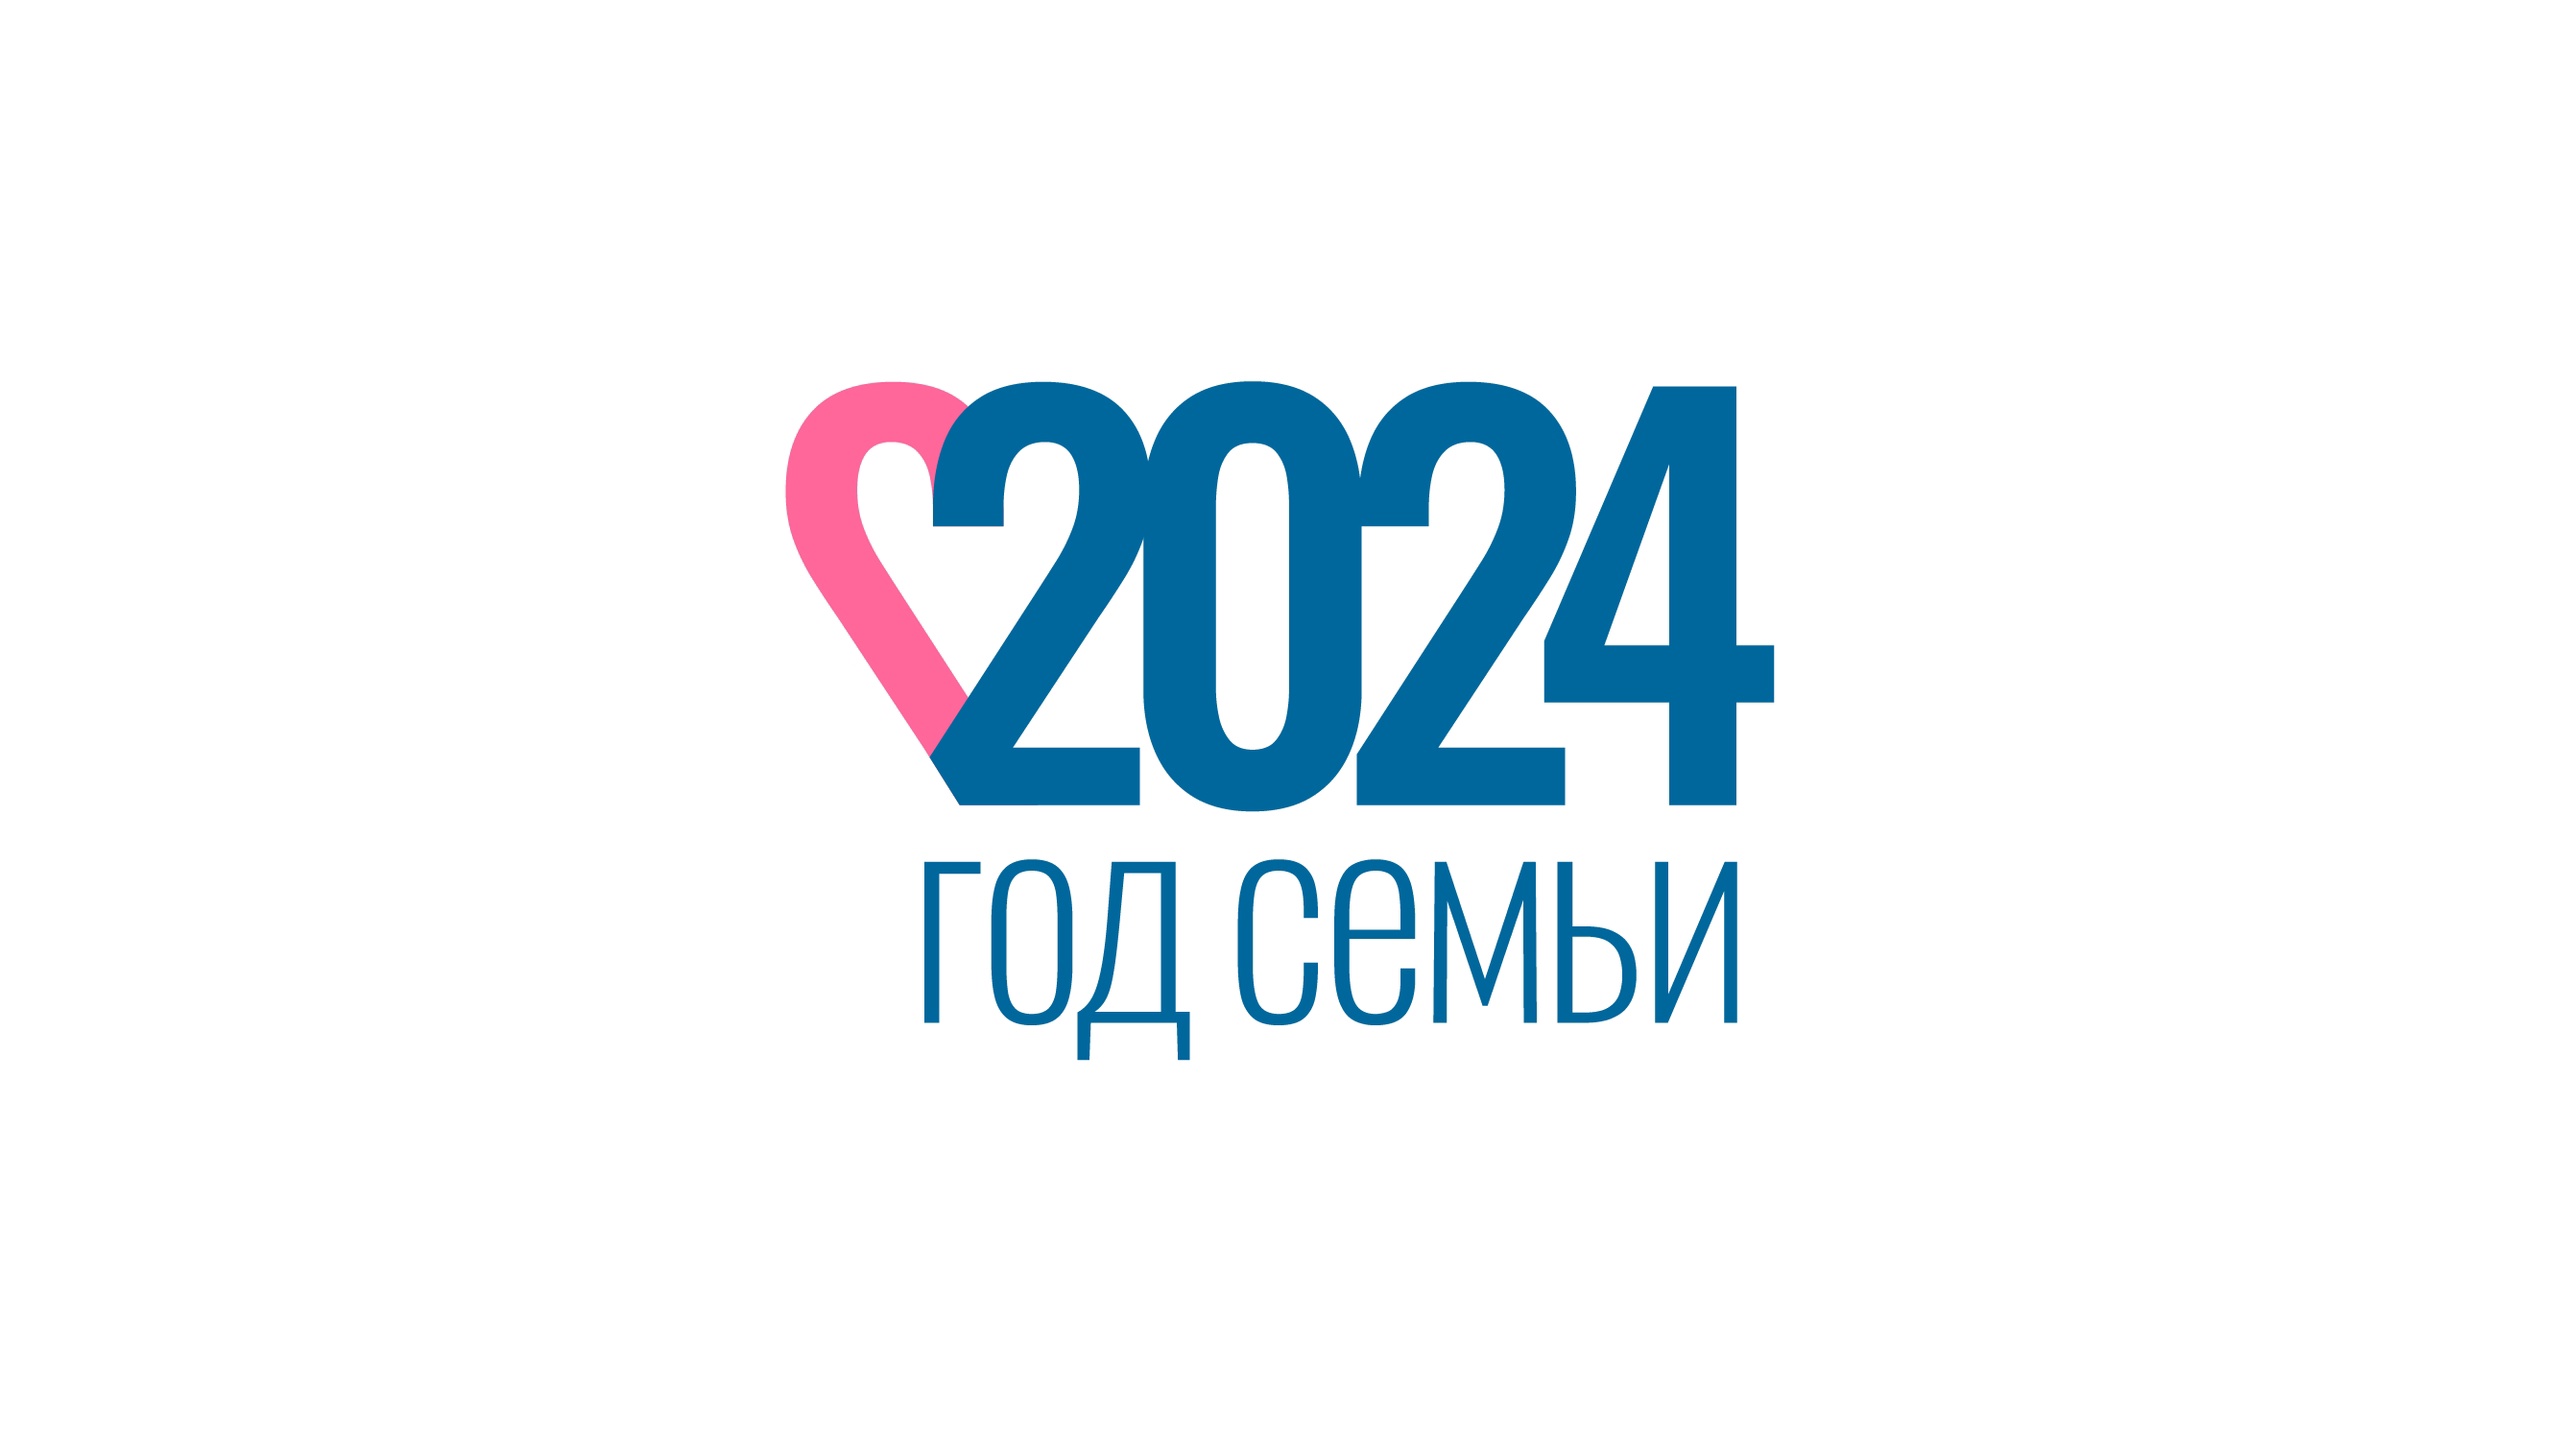 2024 - ГОД СЕМЬИ!.